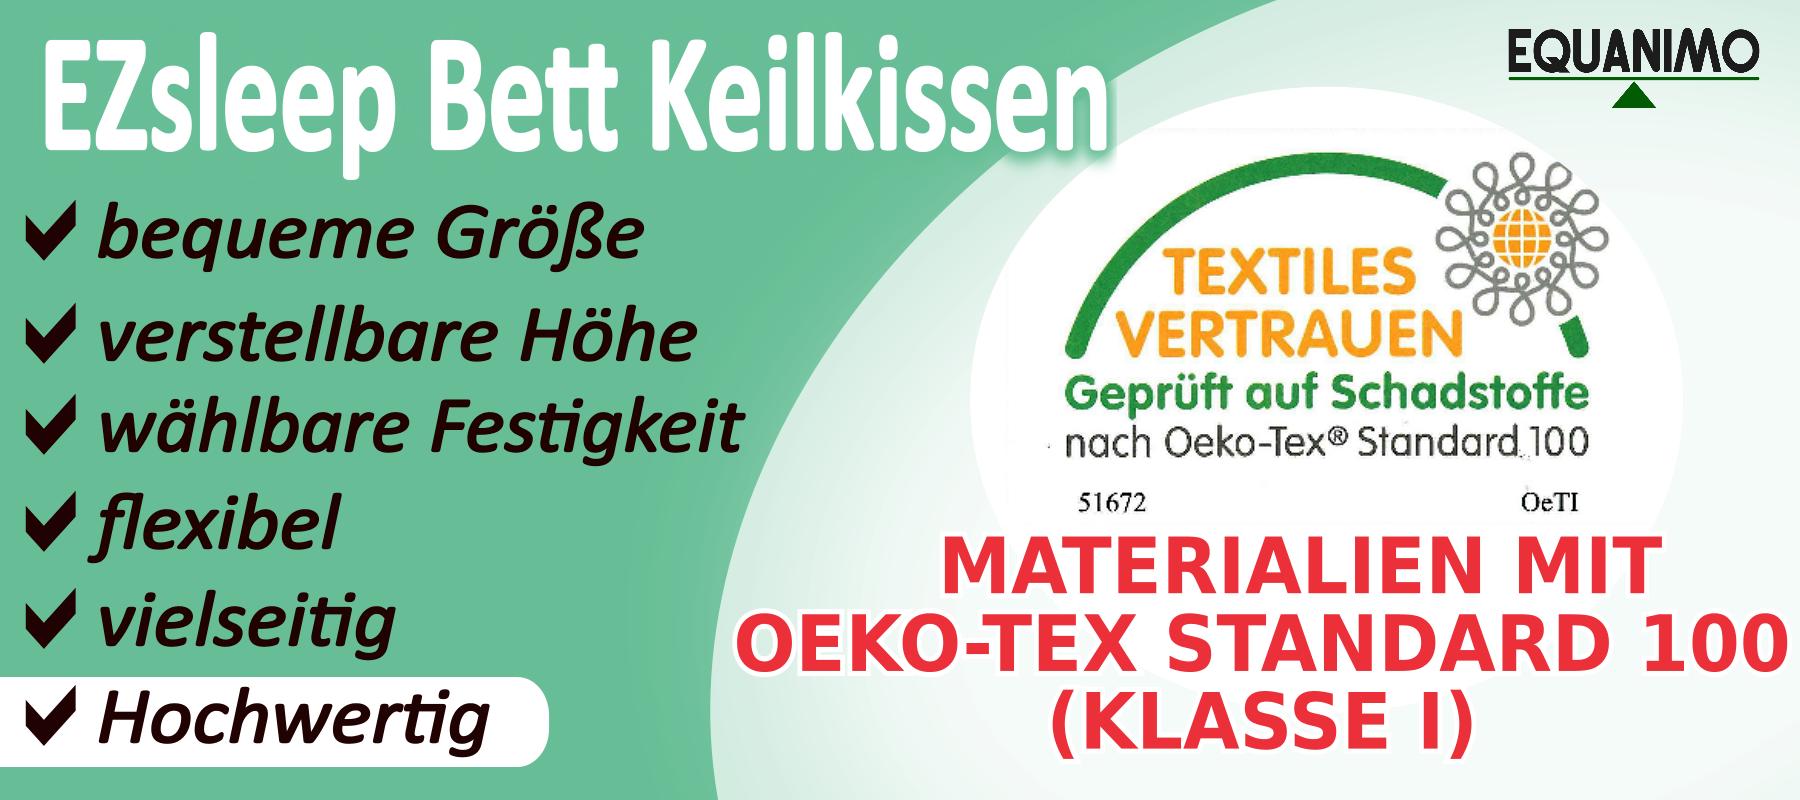 EZsleep Keilkissen aus Hochwertigen Materialien mit Oeko-Tex Standard 100 (Kalsse I)